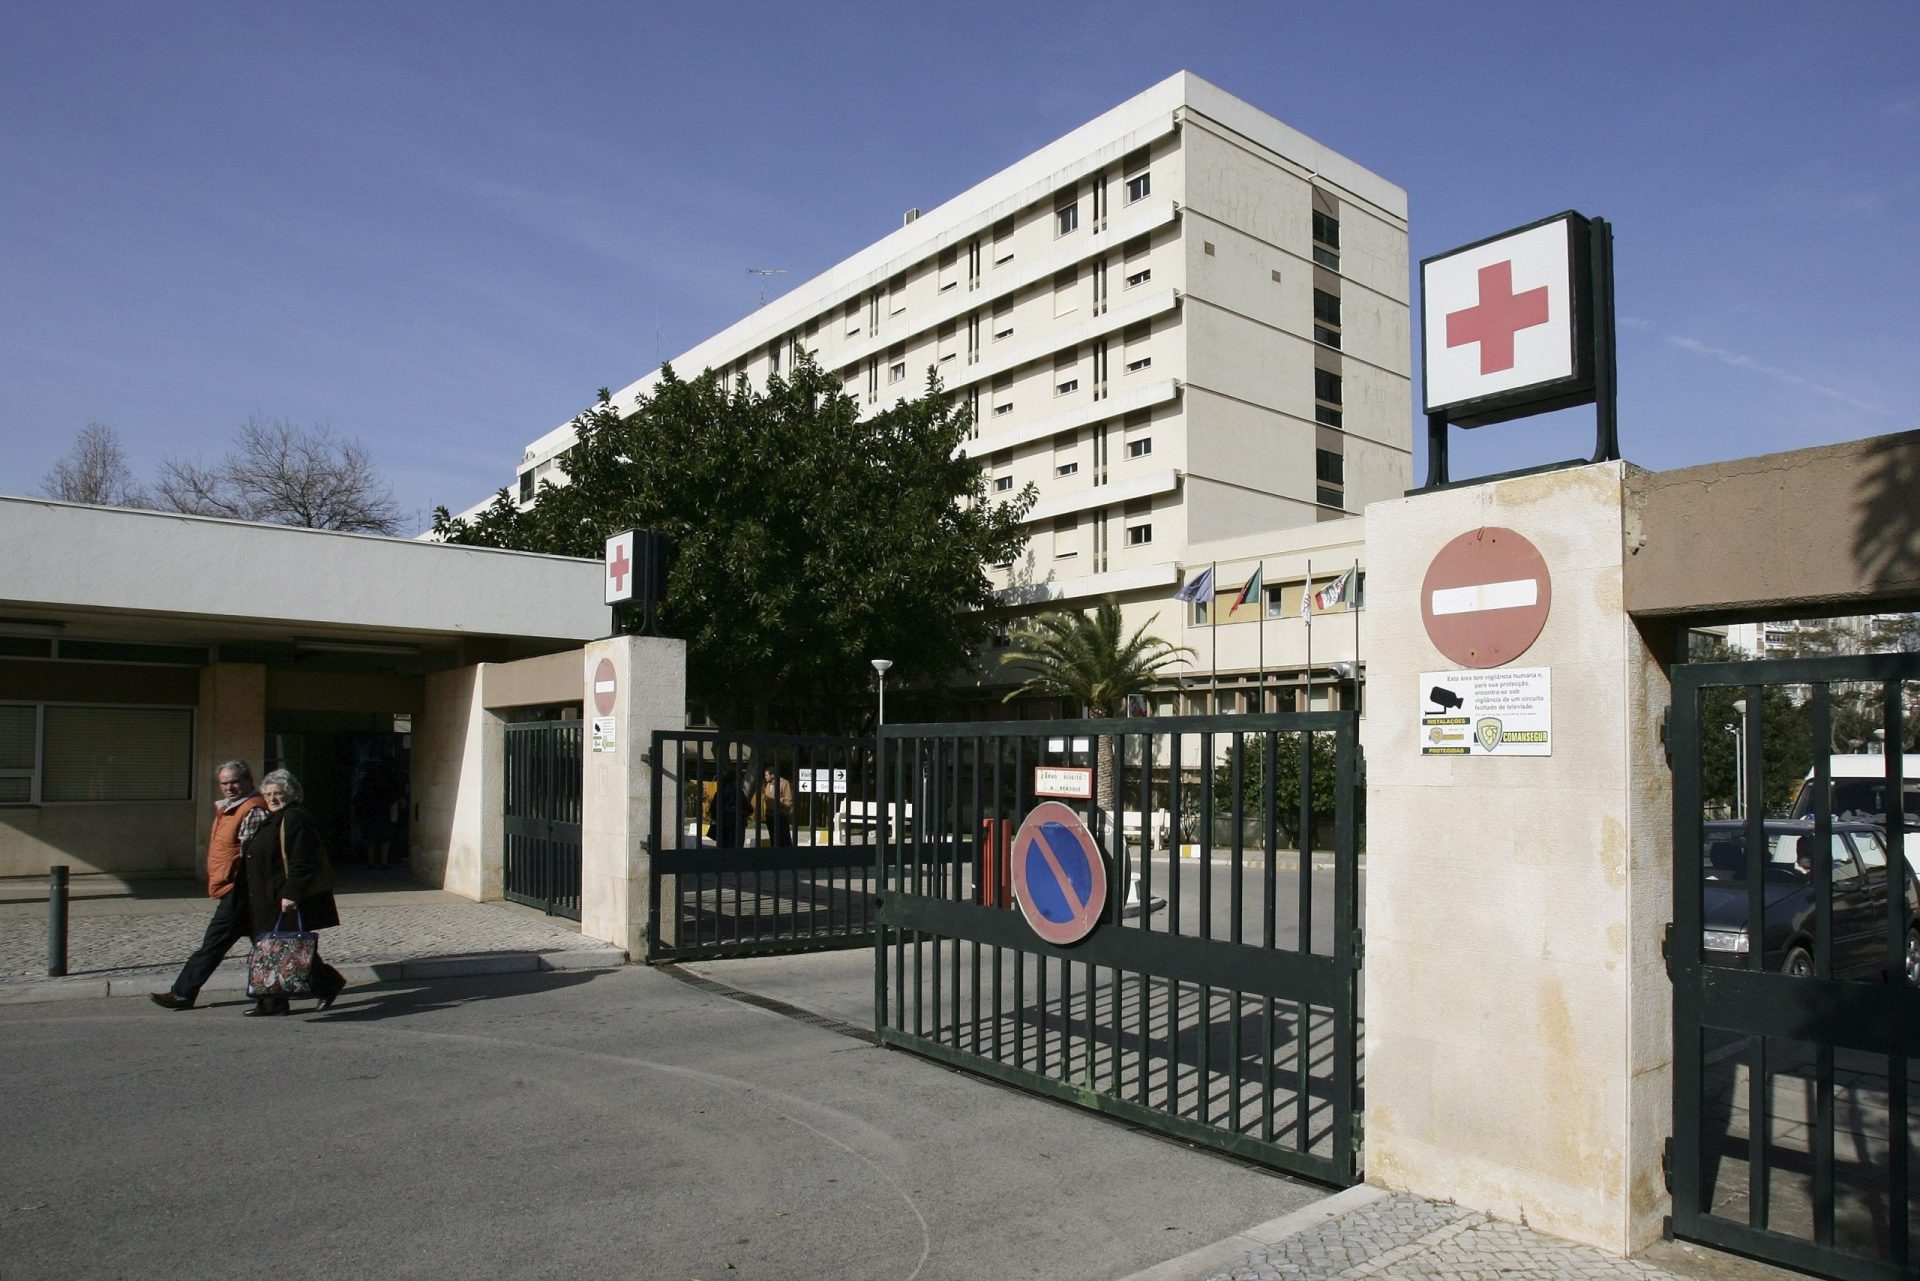 Unidade coronária do Hospital de Faro encerrada devido ao piolho do pombo